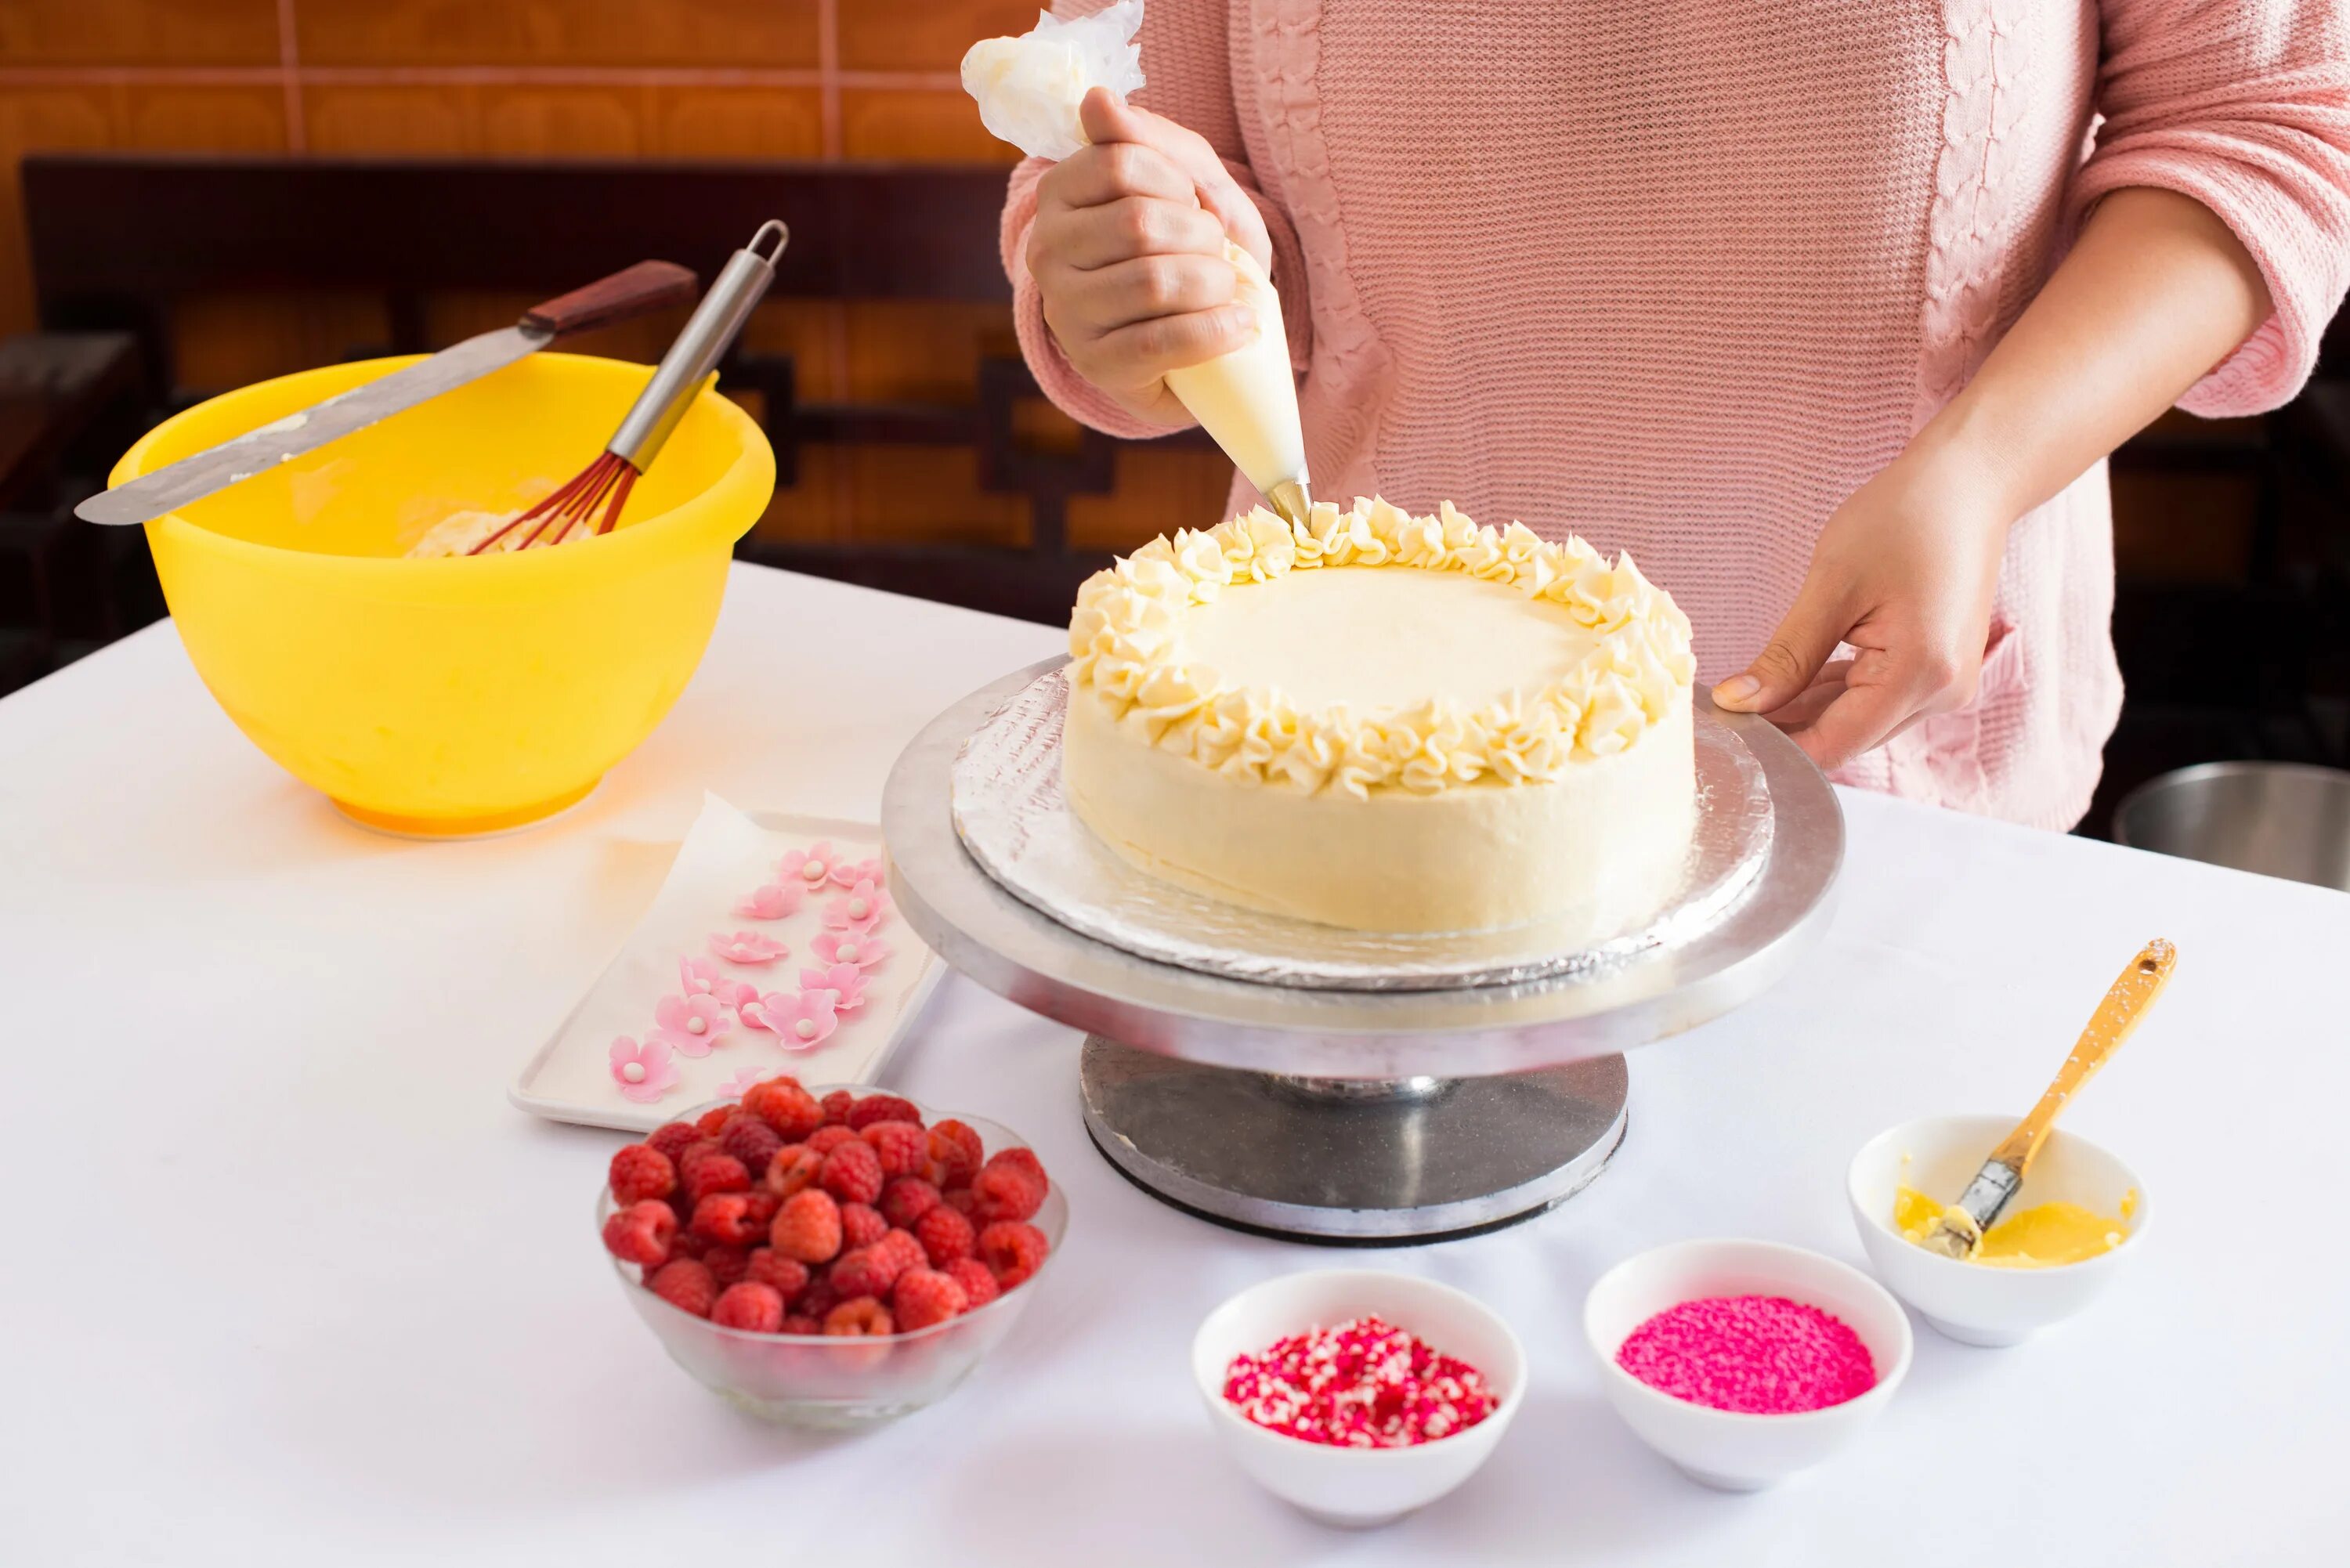 Preparing на русском. Готовка торта. Кулинарные украшения для тортов. Выпекание торта. Фотосессия приготовления торта.